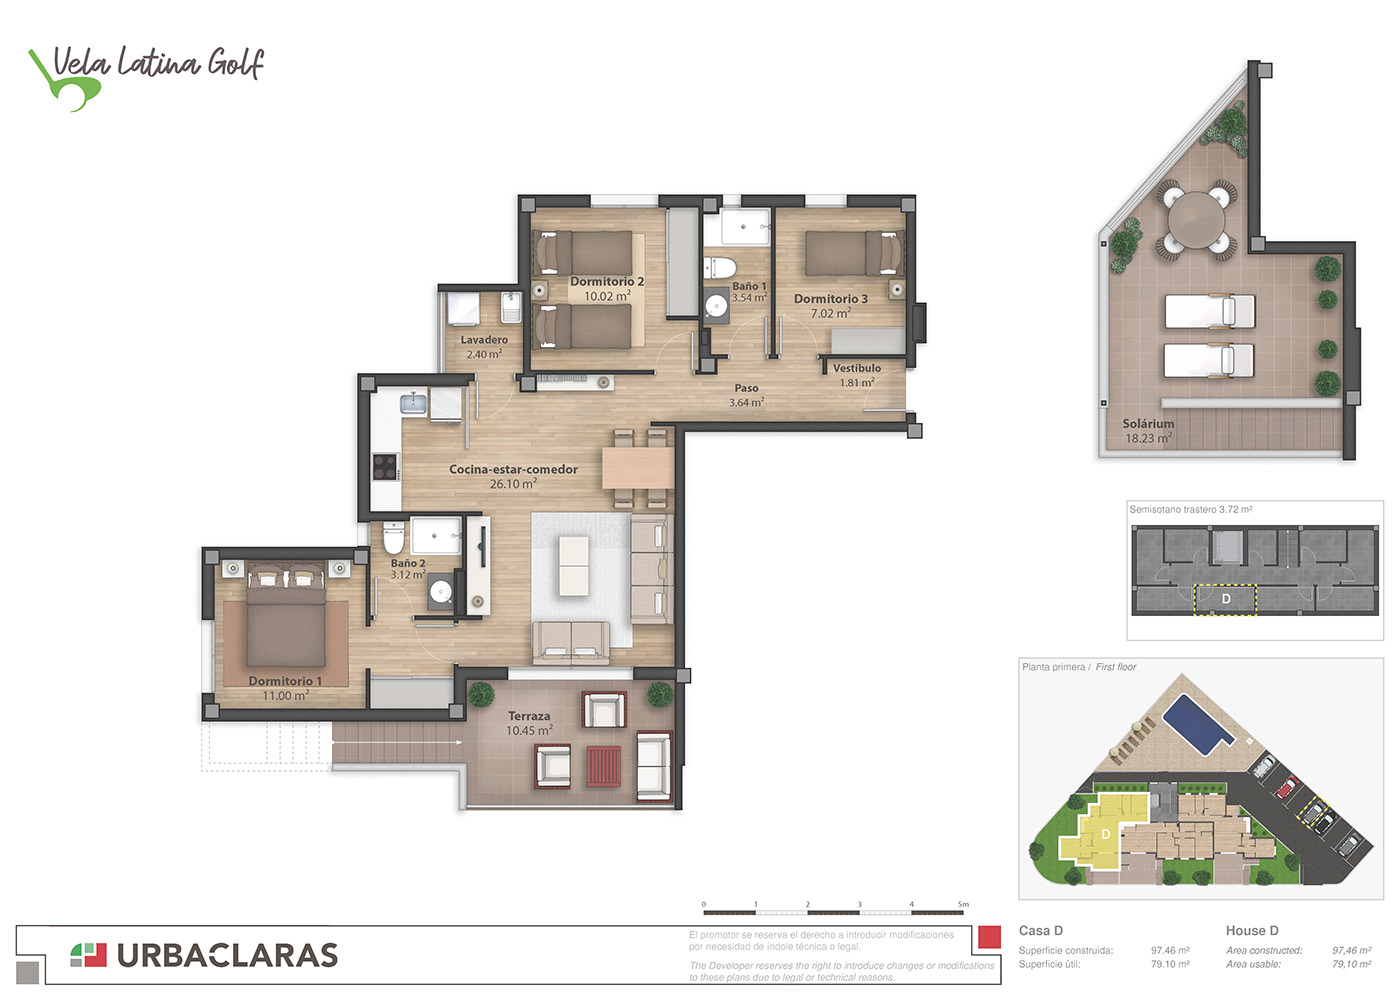 floor plan floorplan rendering plano real estate